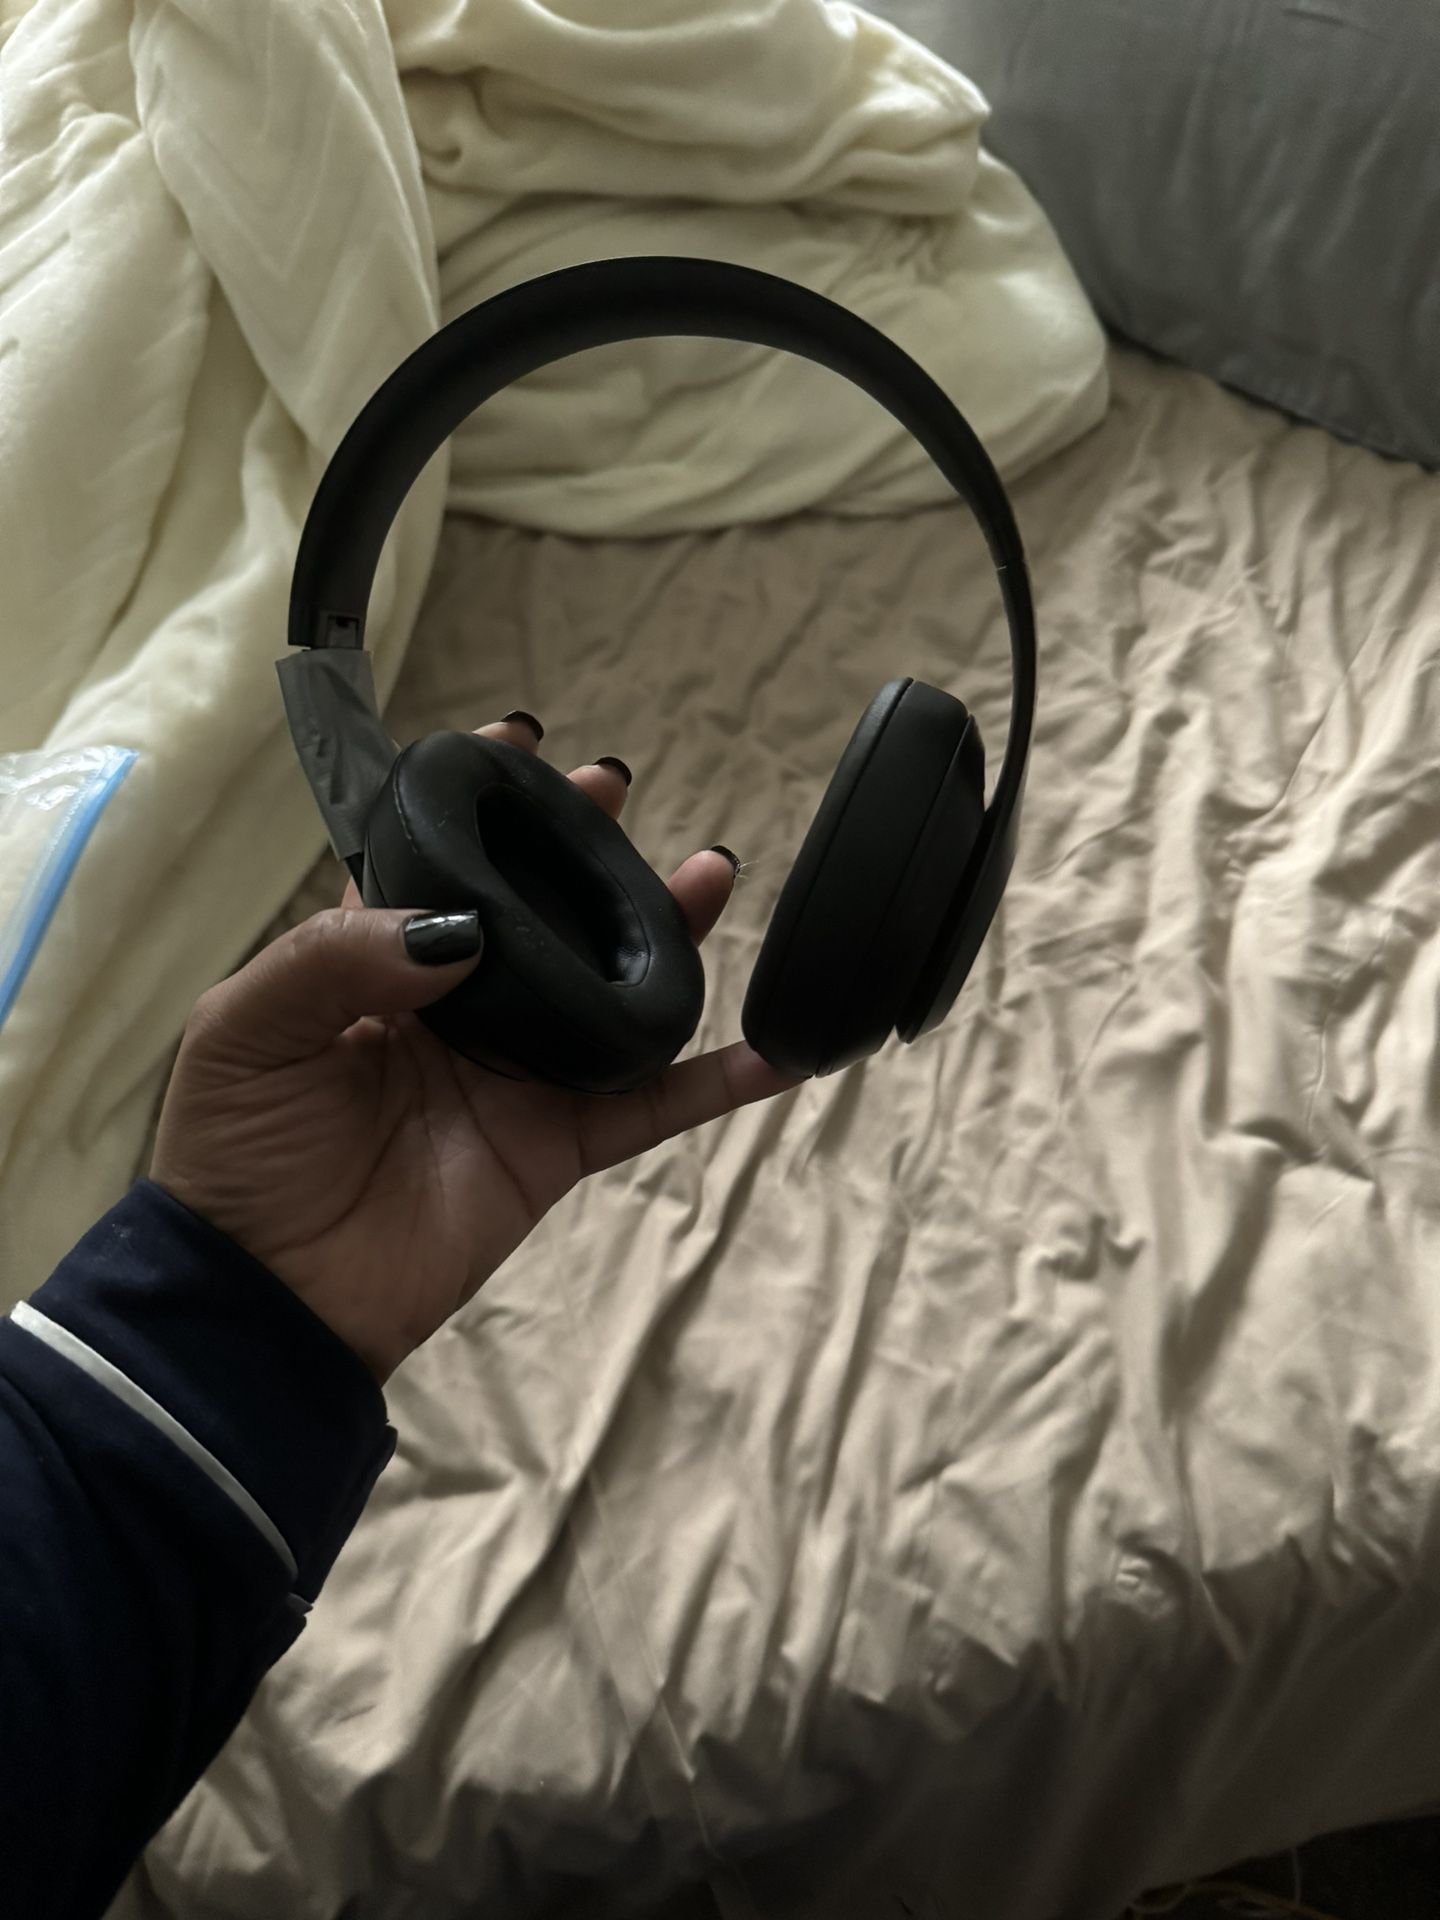 Beats Headphones